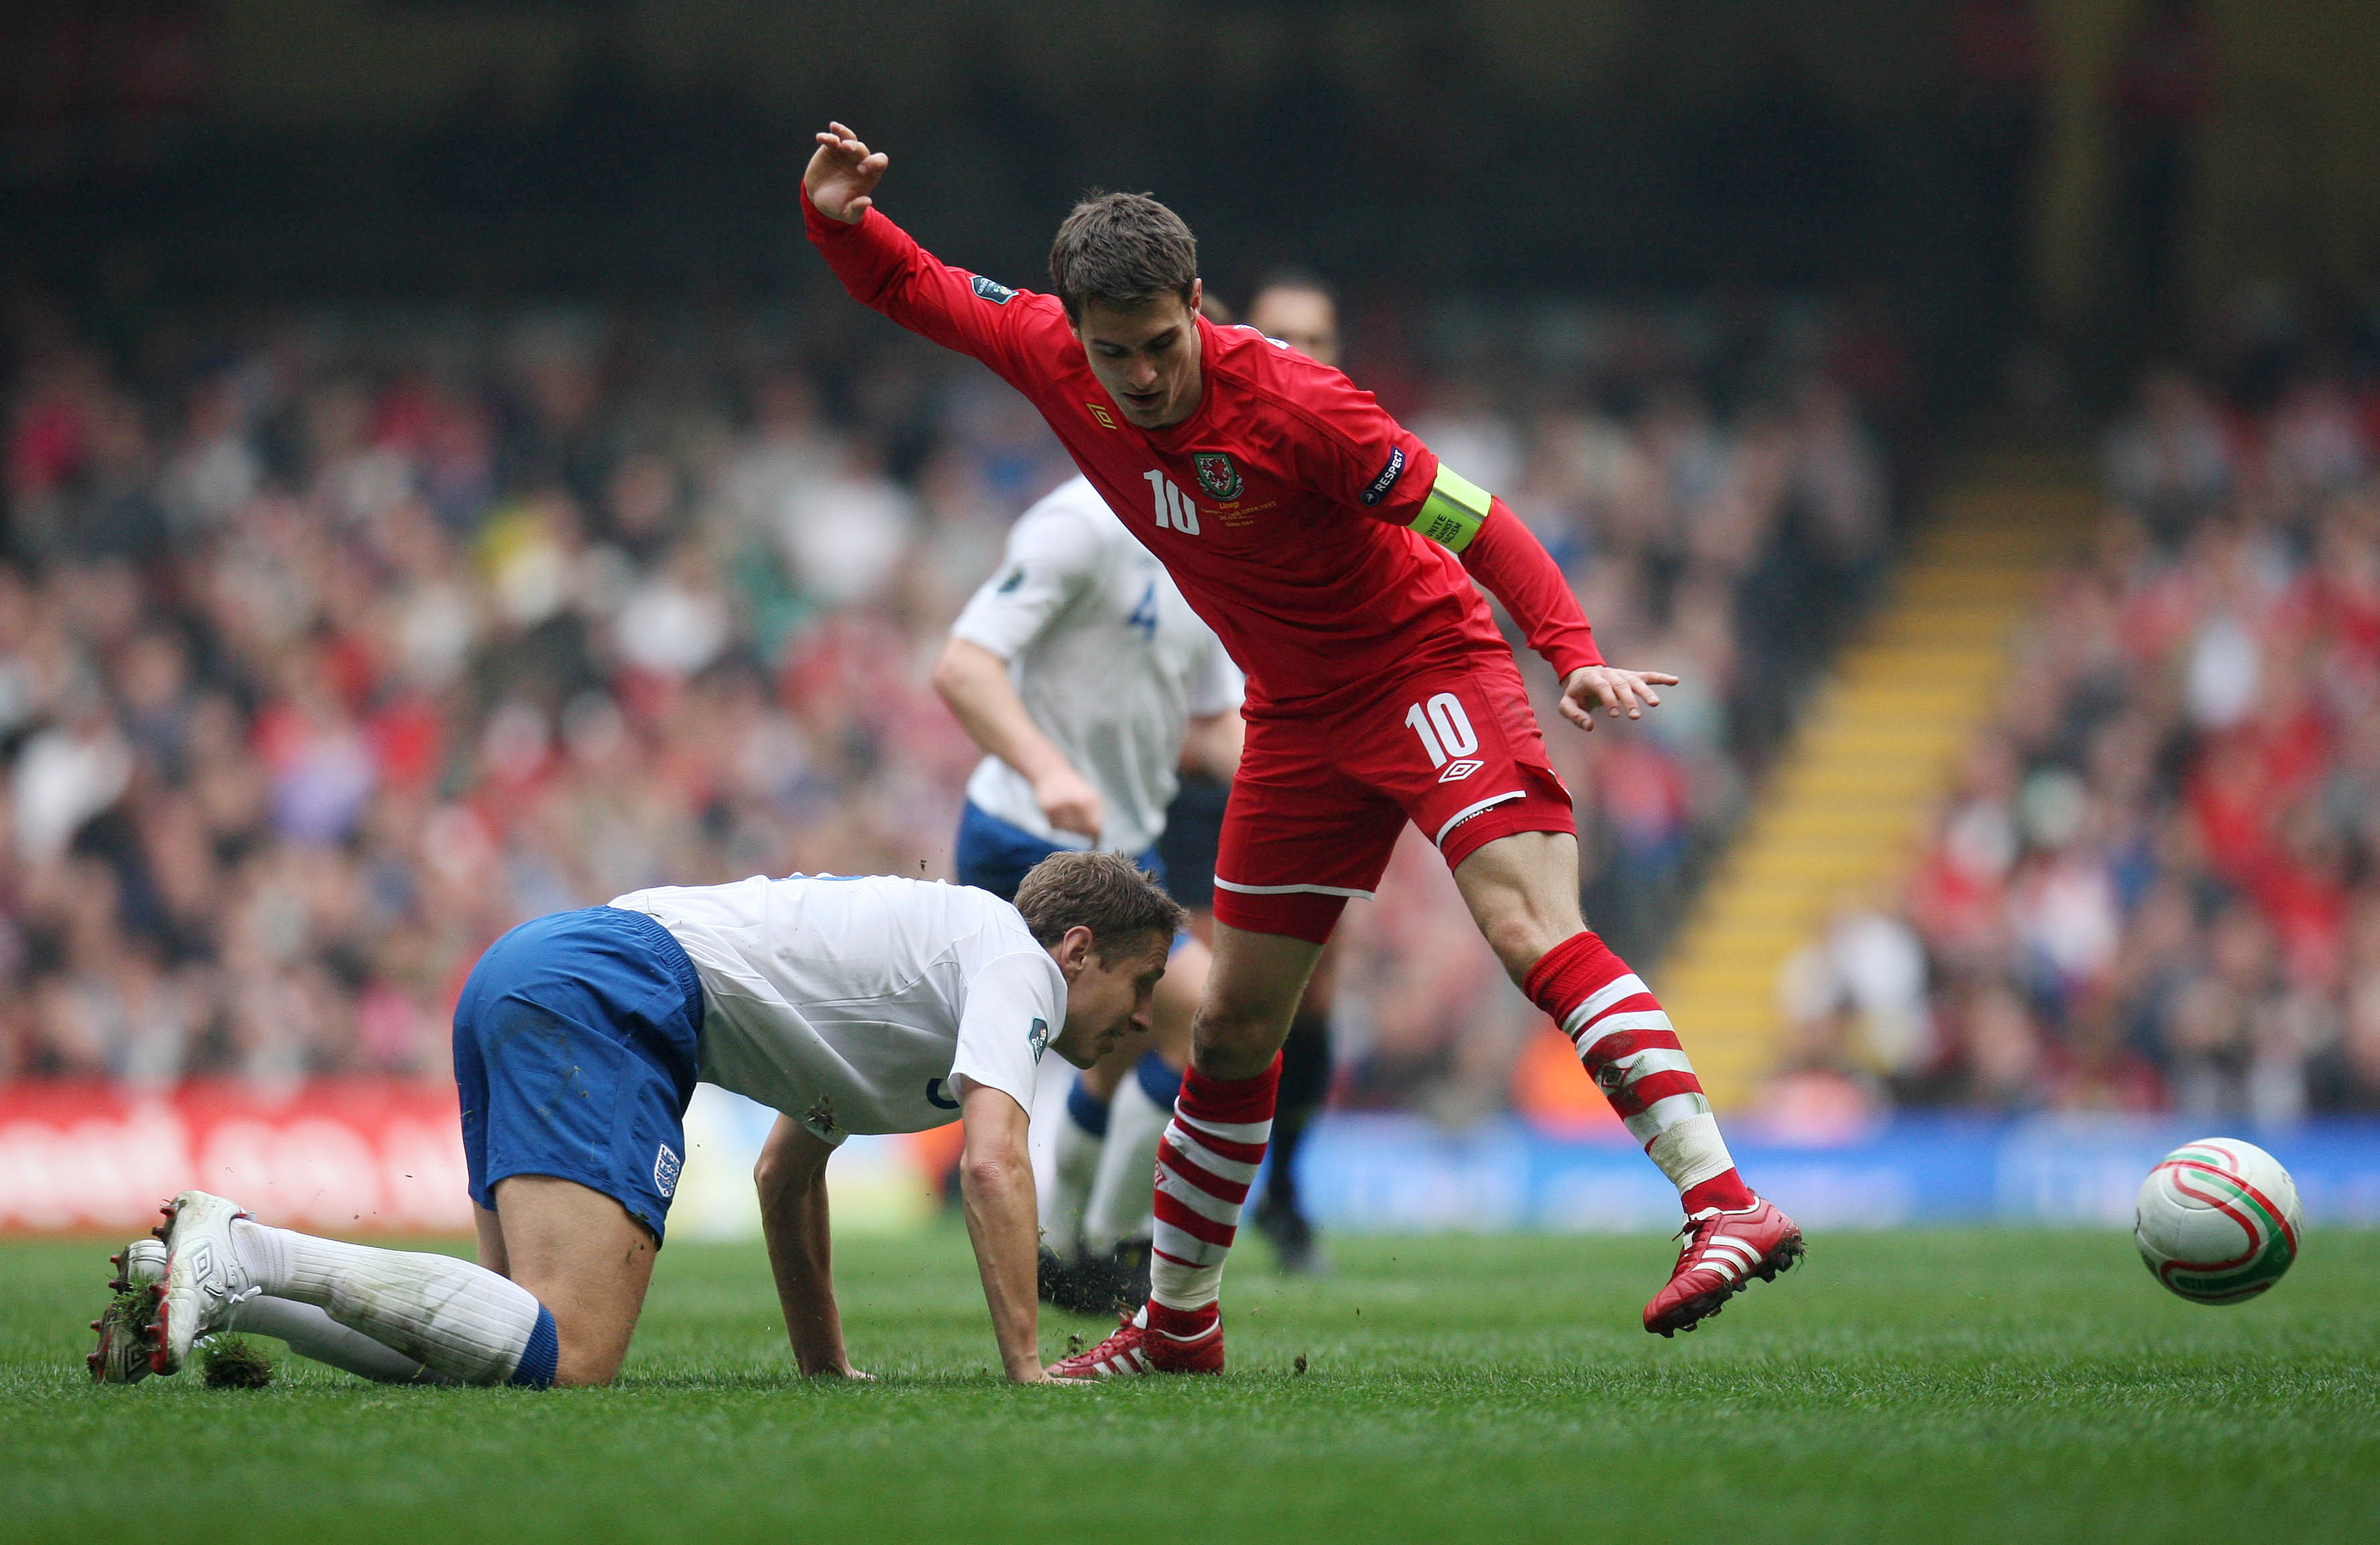 Aaron Ramsey, till vardags i Arsenal och Wales landslag, kommer också få spela OS-fotboll.